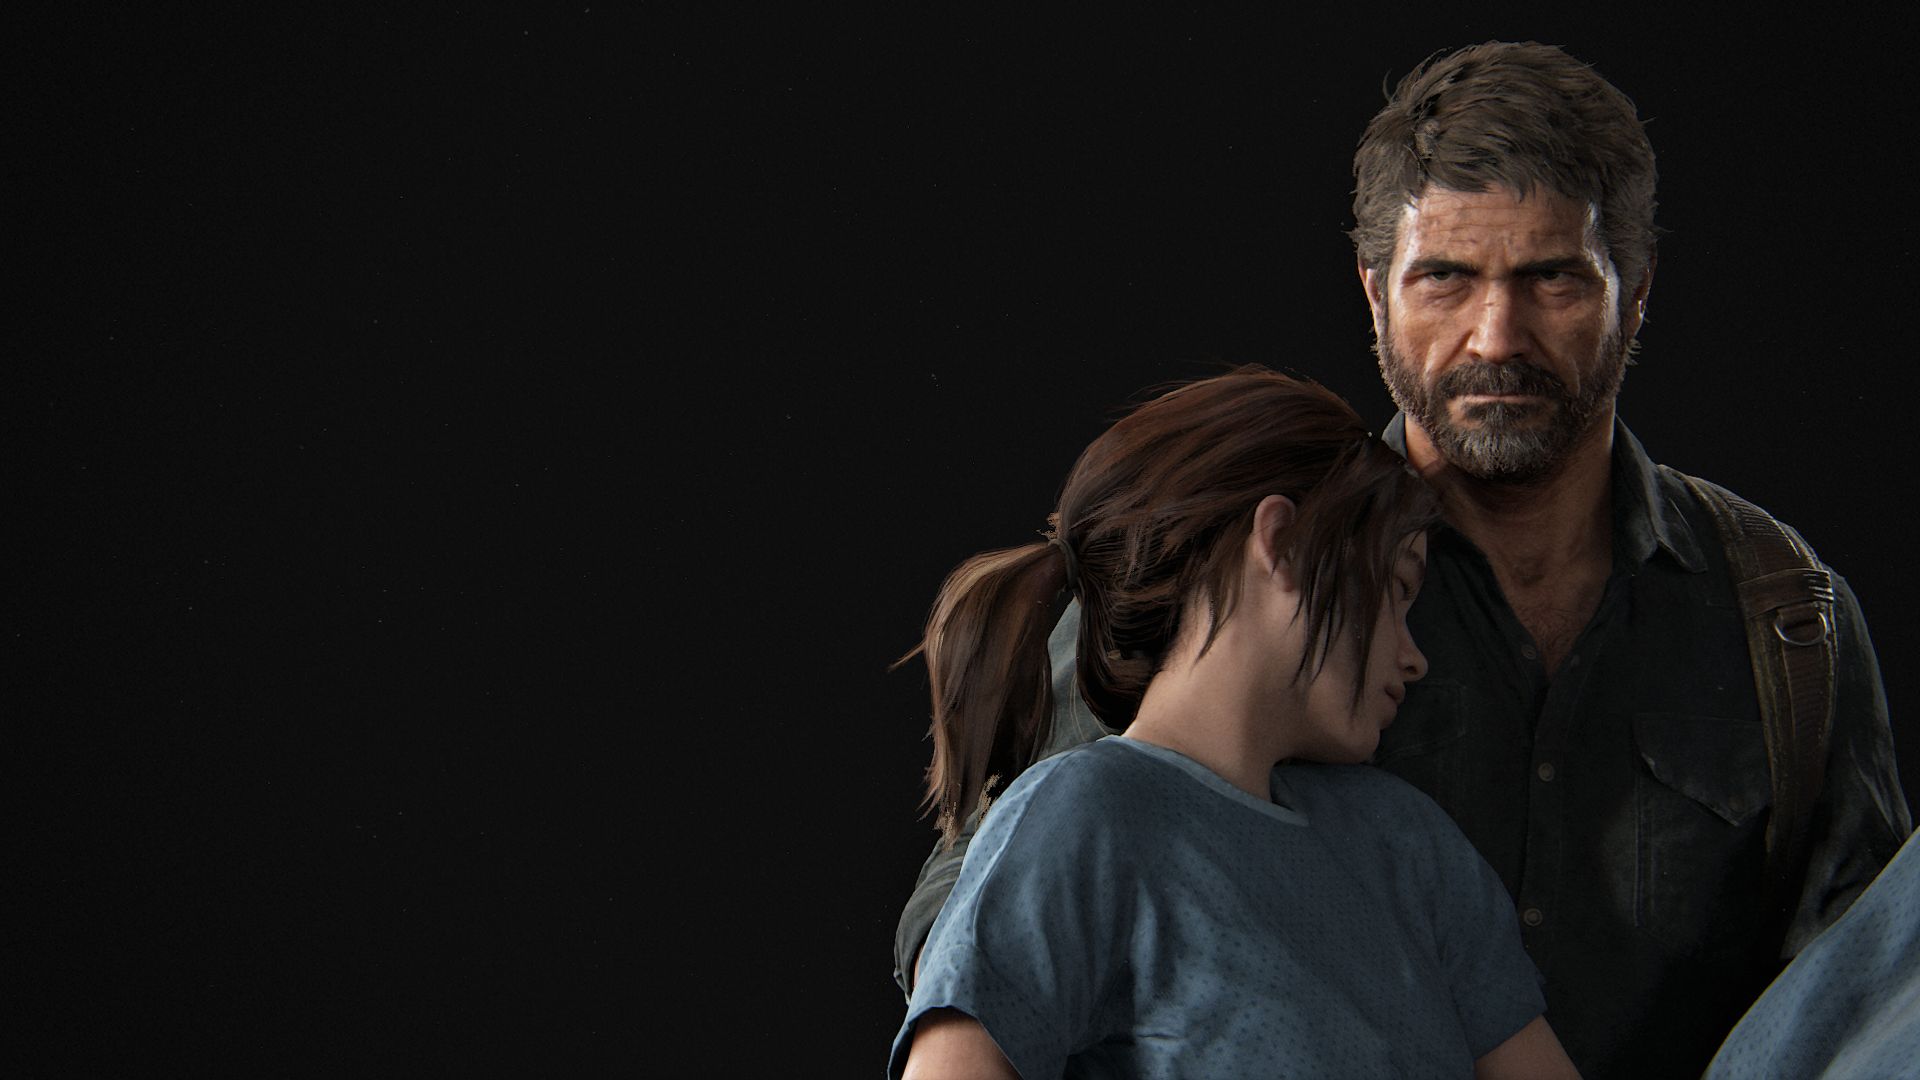 Téléchargez gratuitement l'image Jeux Vidéo, The Last Of Us: Part Ii sur le bureau de votre PC